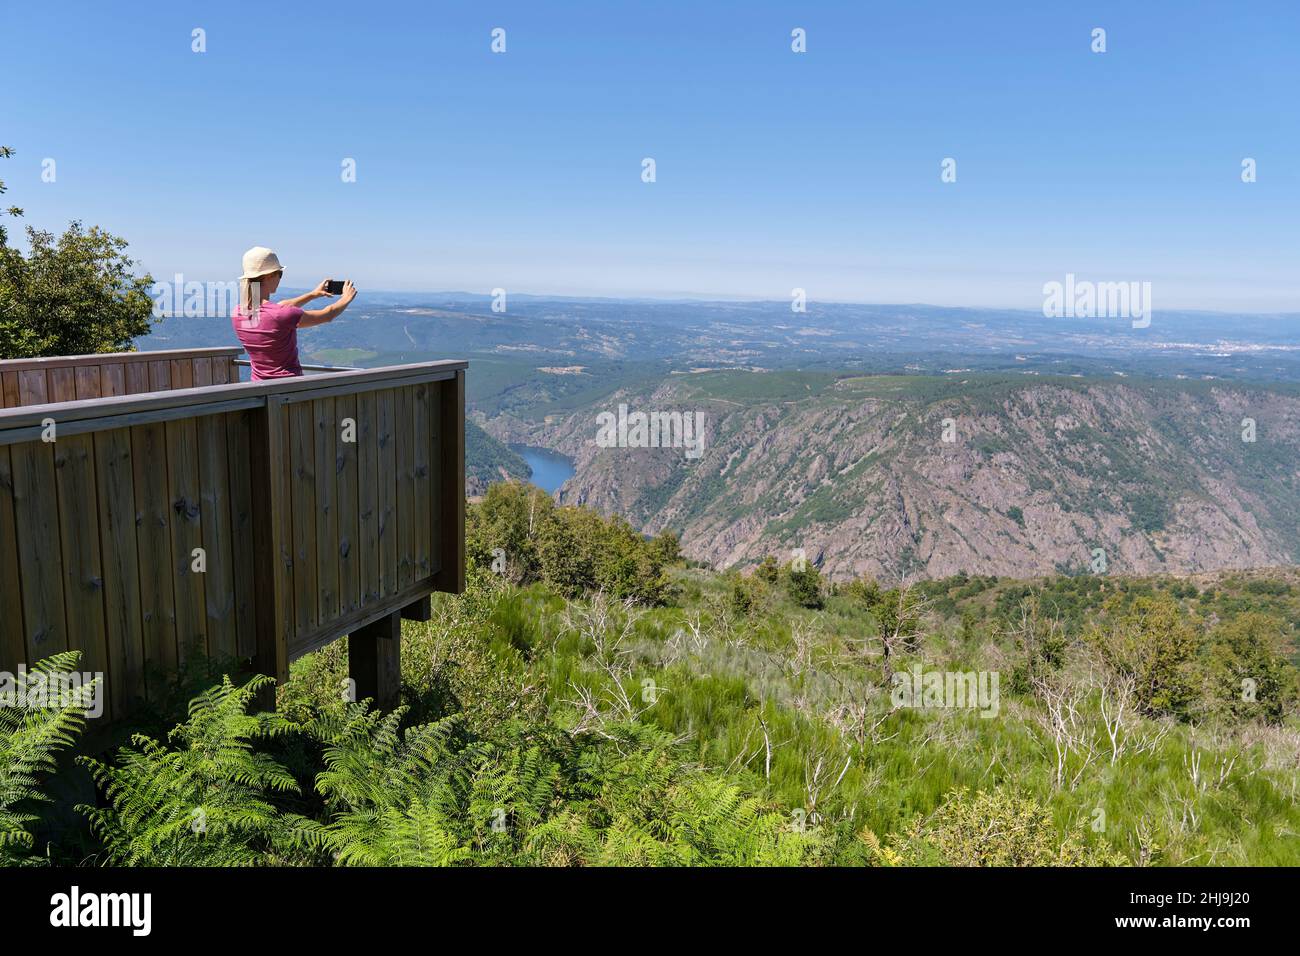 Frau, die vom Aussichtspunkt aus Fotos vom sil River Canyon gemacht hat. Stockfoto